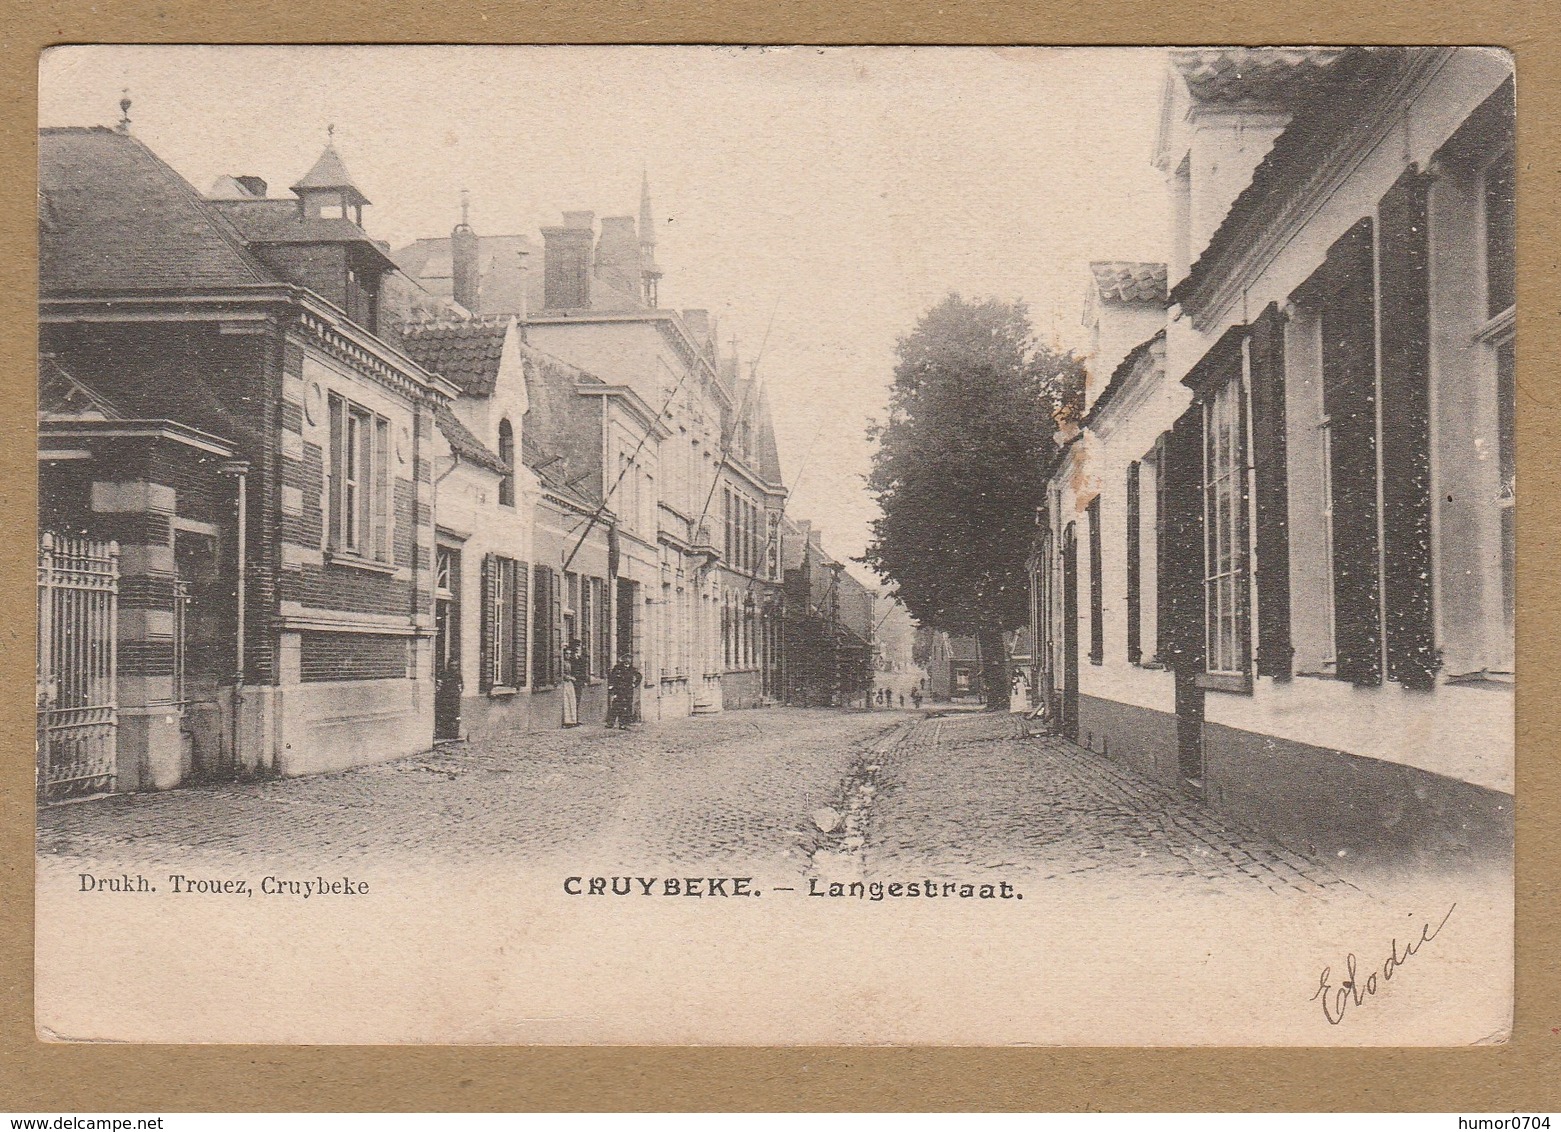 Kruibeke  CRUYBEKE. - Langestraat  Drukh. Trouvez, Cruybeke  (1904) - Kruibeke